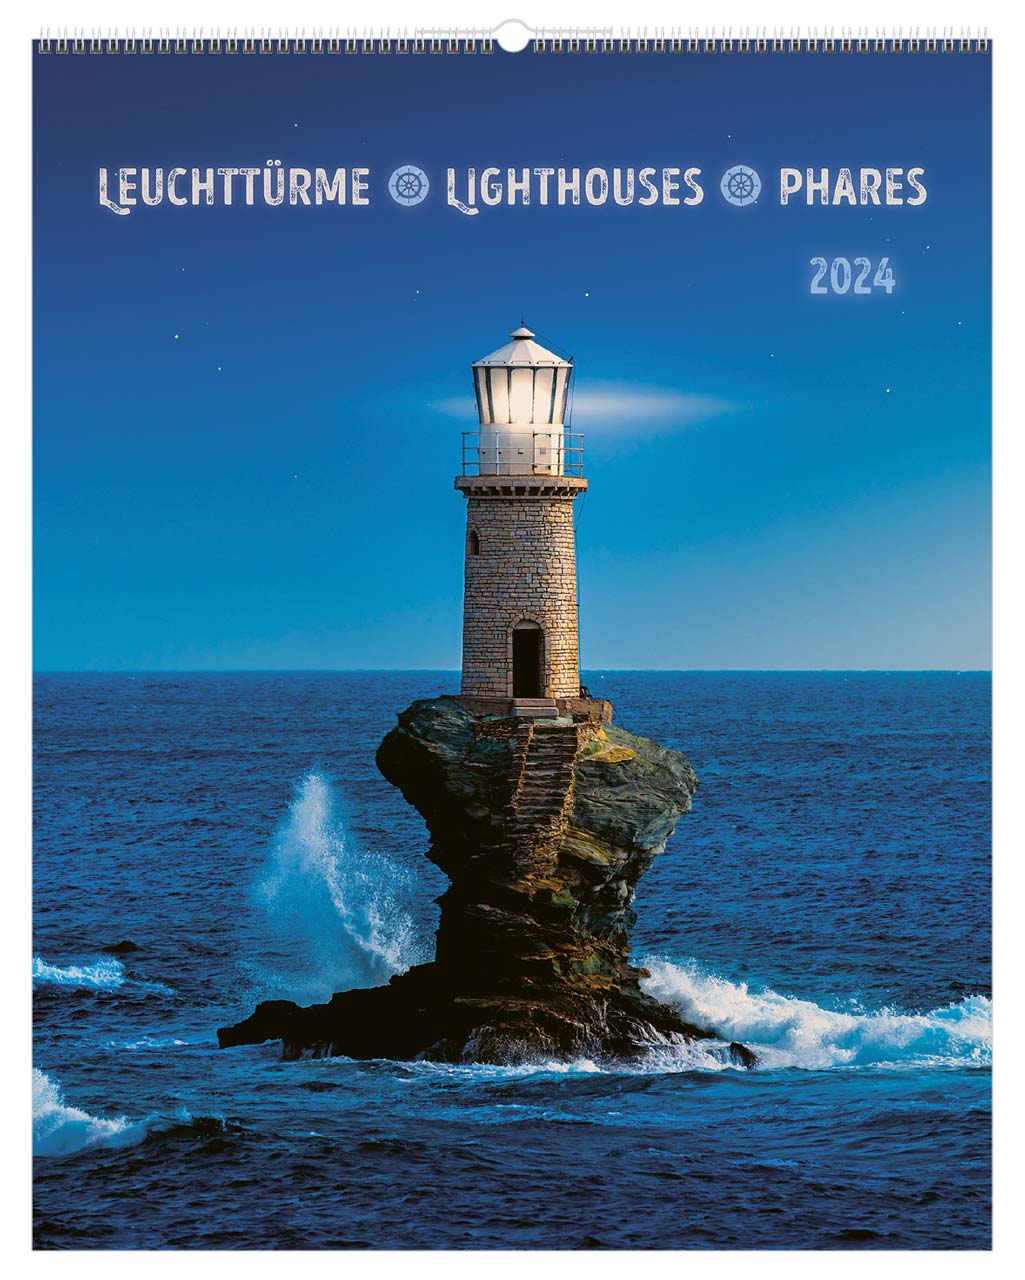 Leuchttürme - Lighthouses - Phares 2024